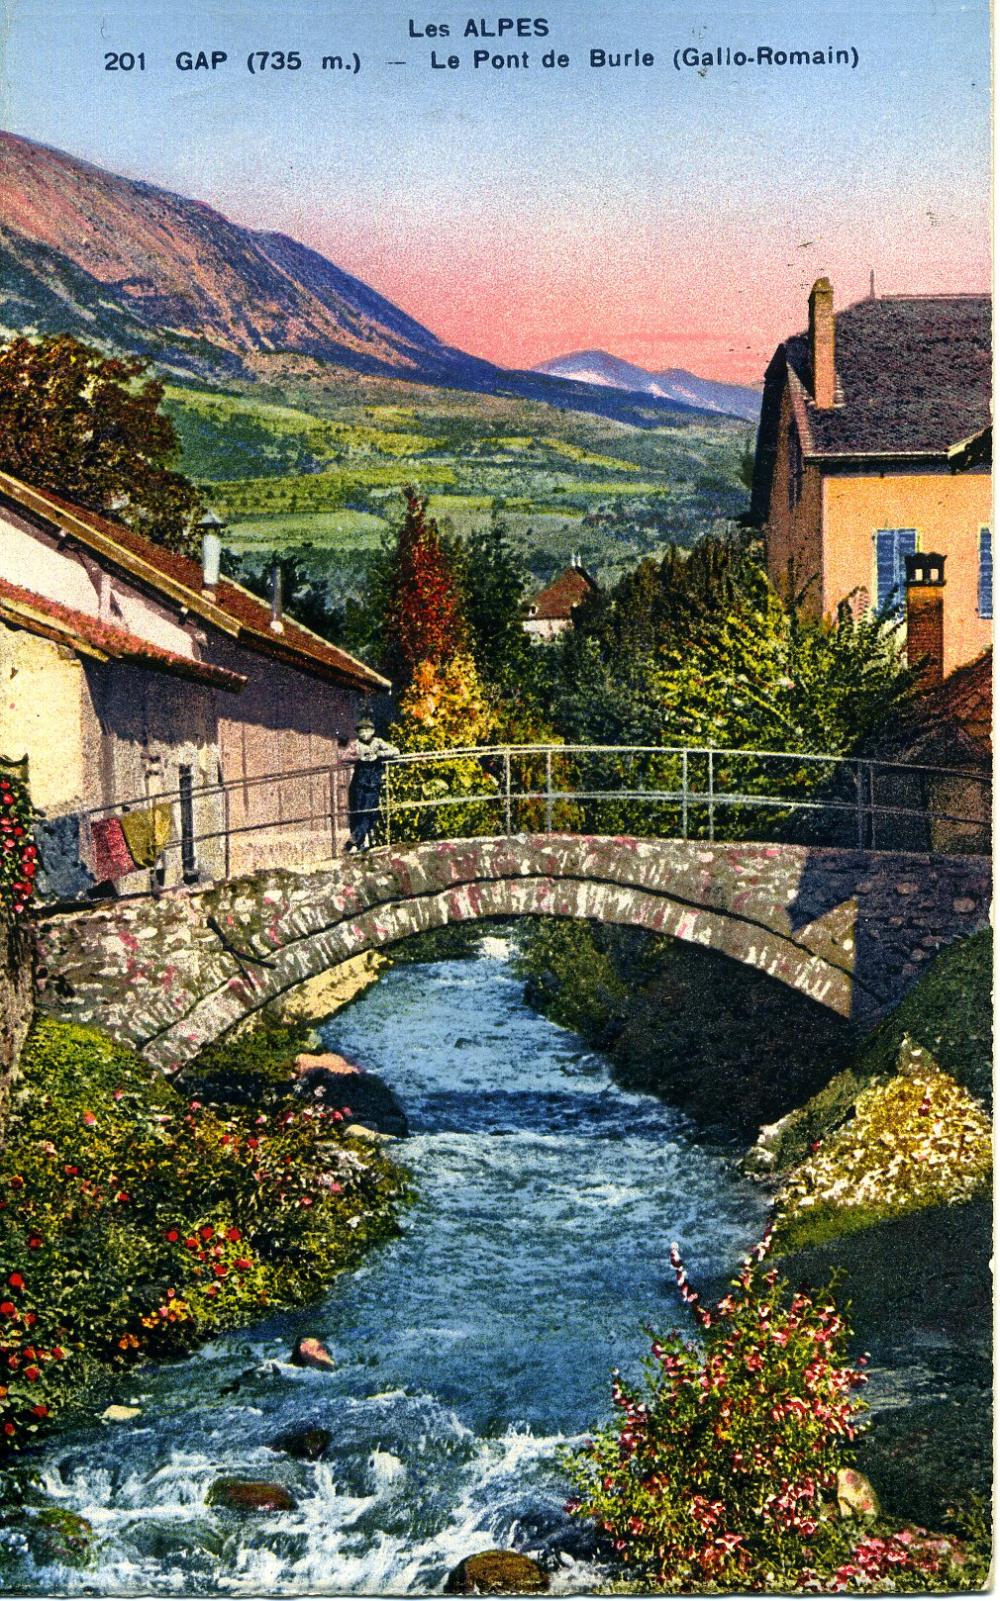 Gap - Le Pont de Burle ( Gallo Romain)